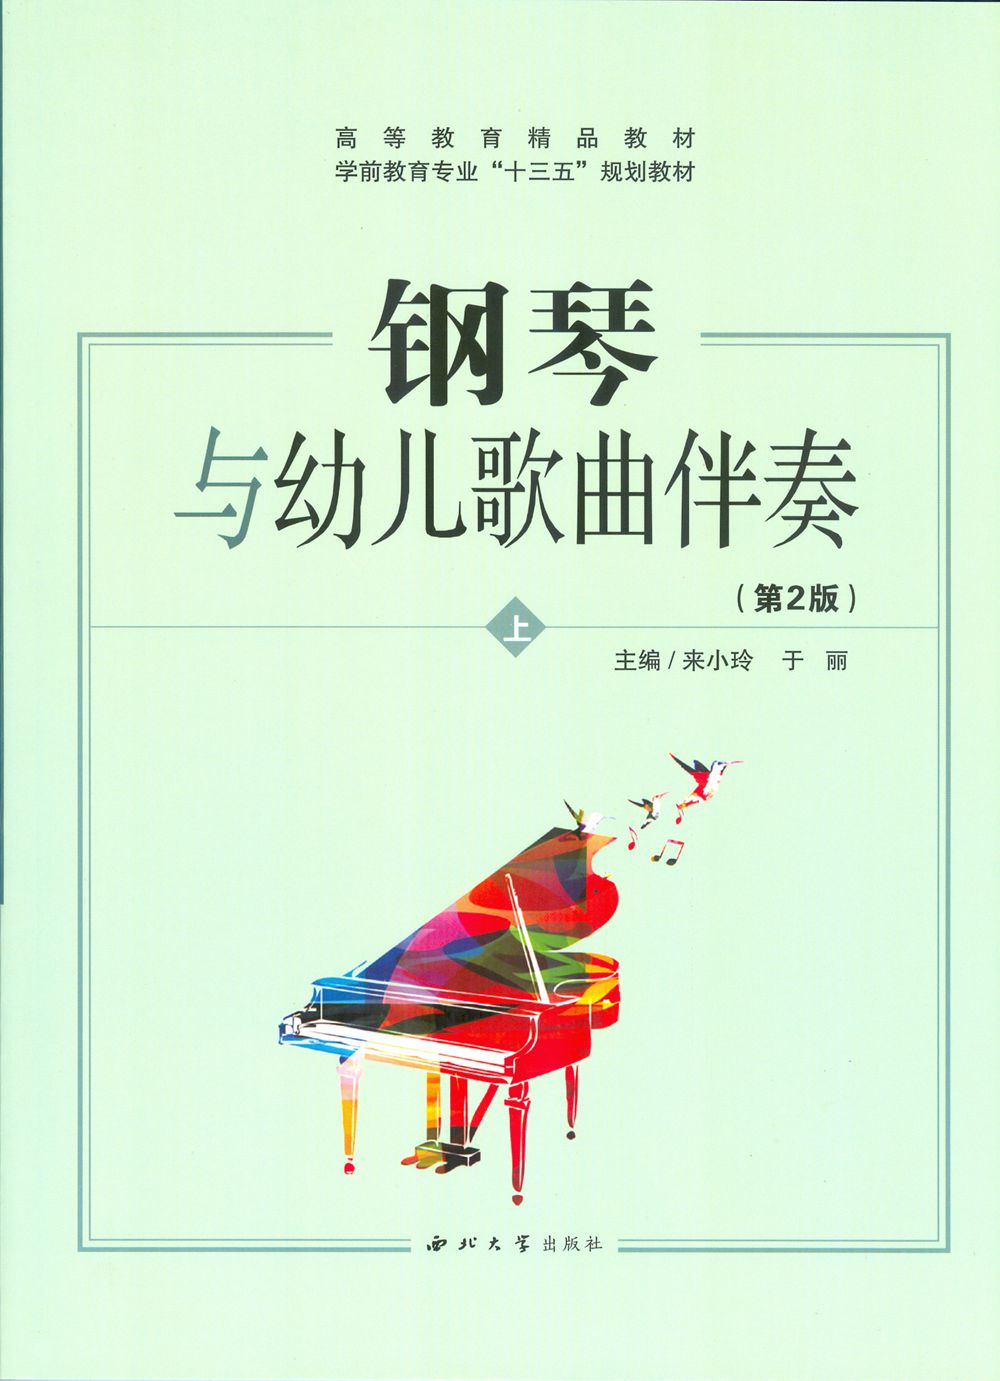 鋼琴與幼兒歌曲伴奏(西北大學出版社出版教材)